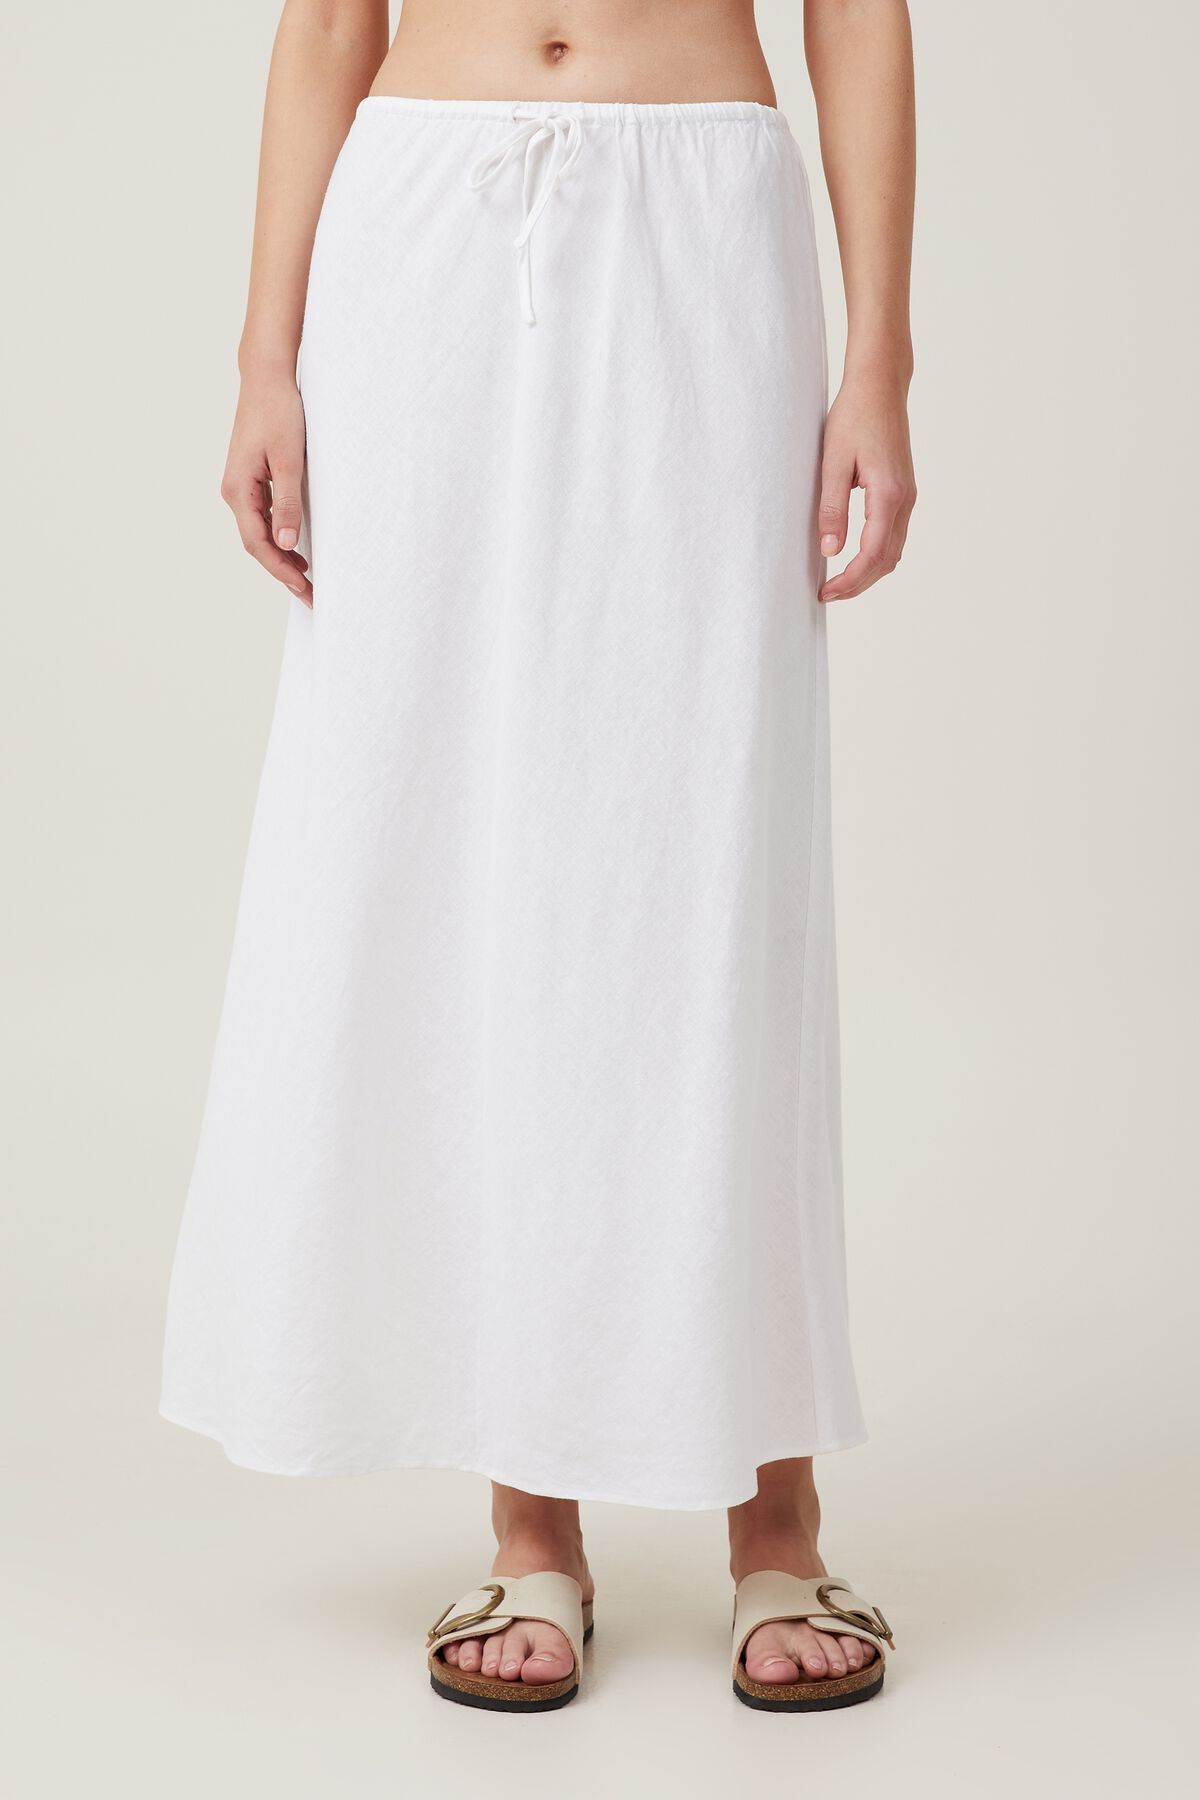 Haven Maxi Slip Skirt | Cotton On (US)